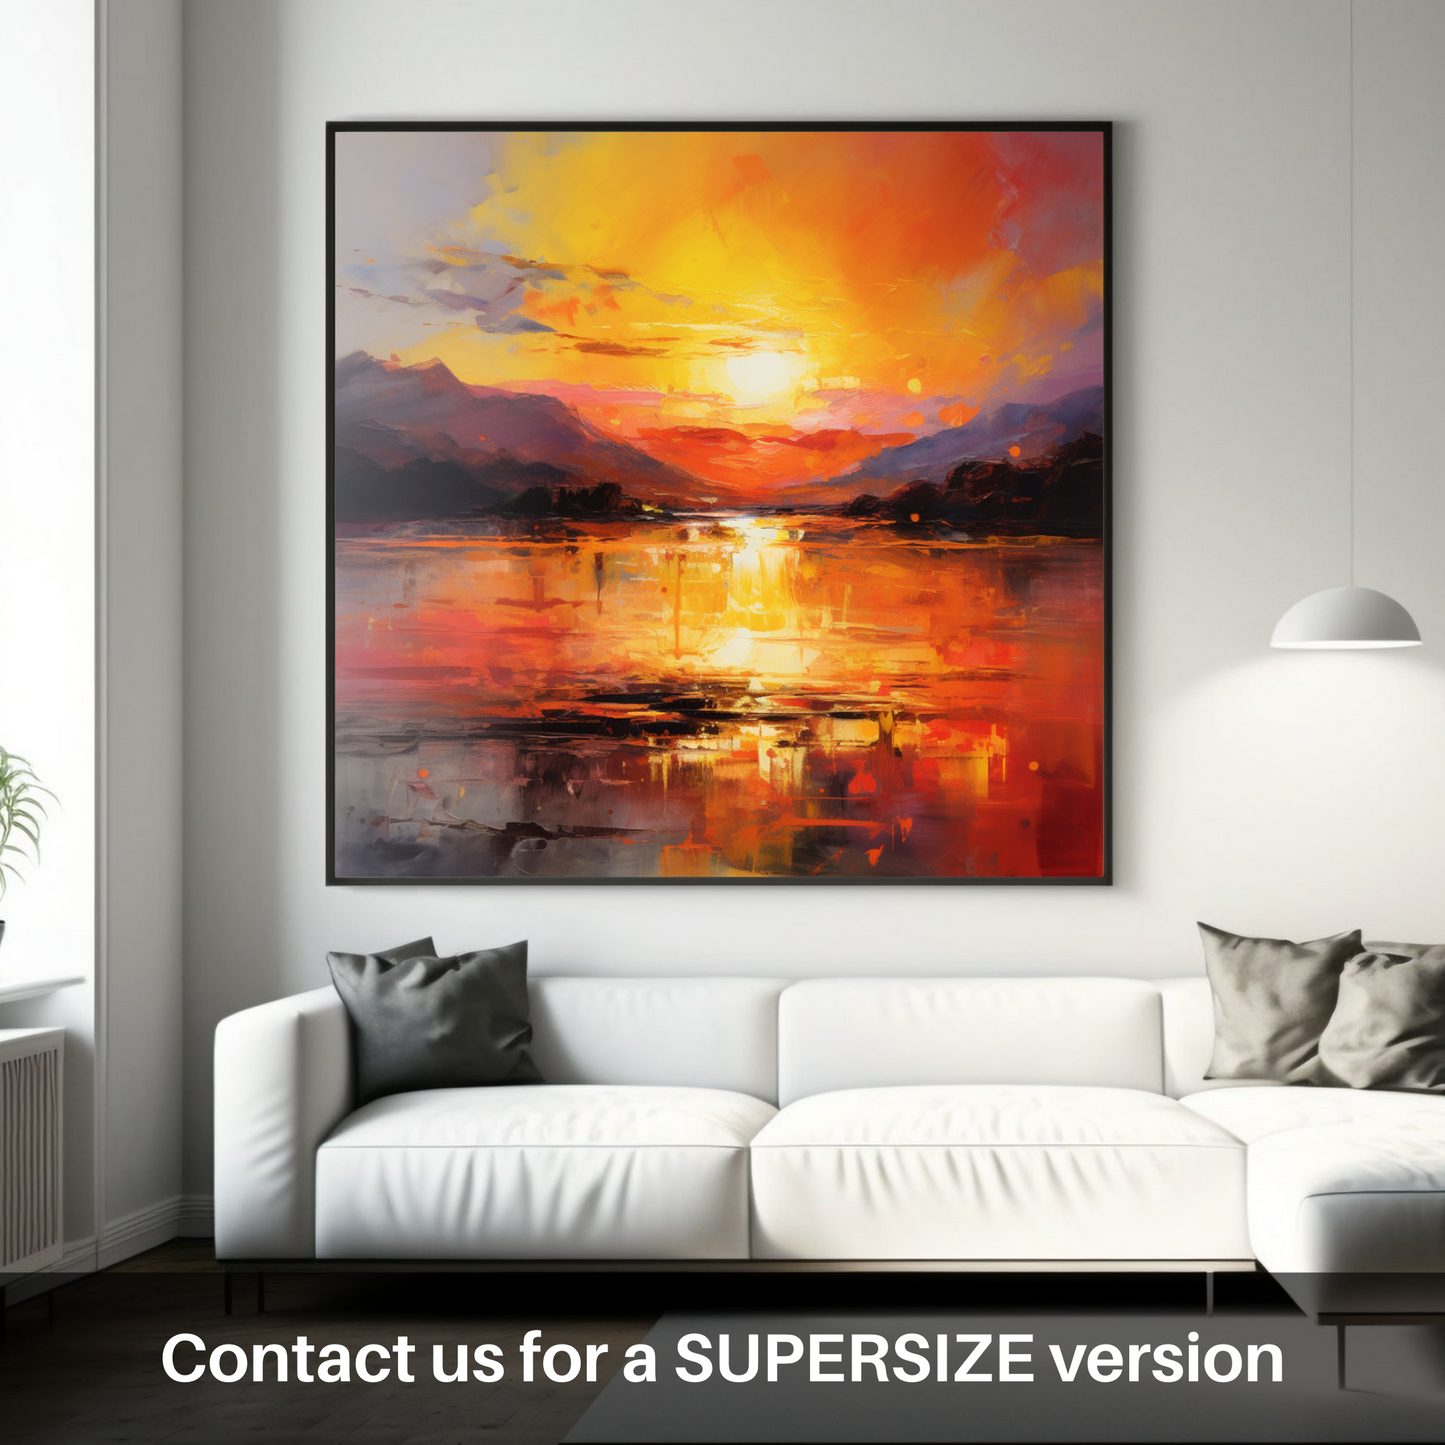 Huge supersize print of Sunset over Loch Lomond